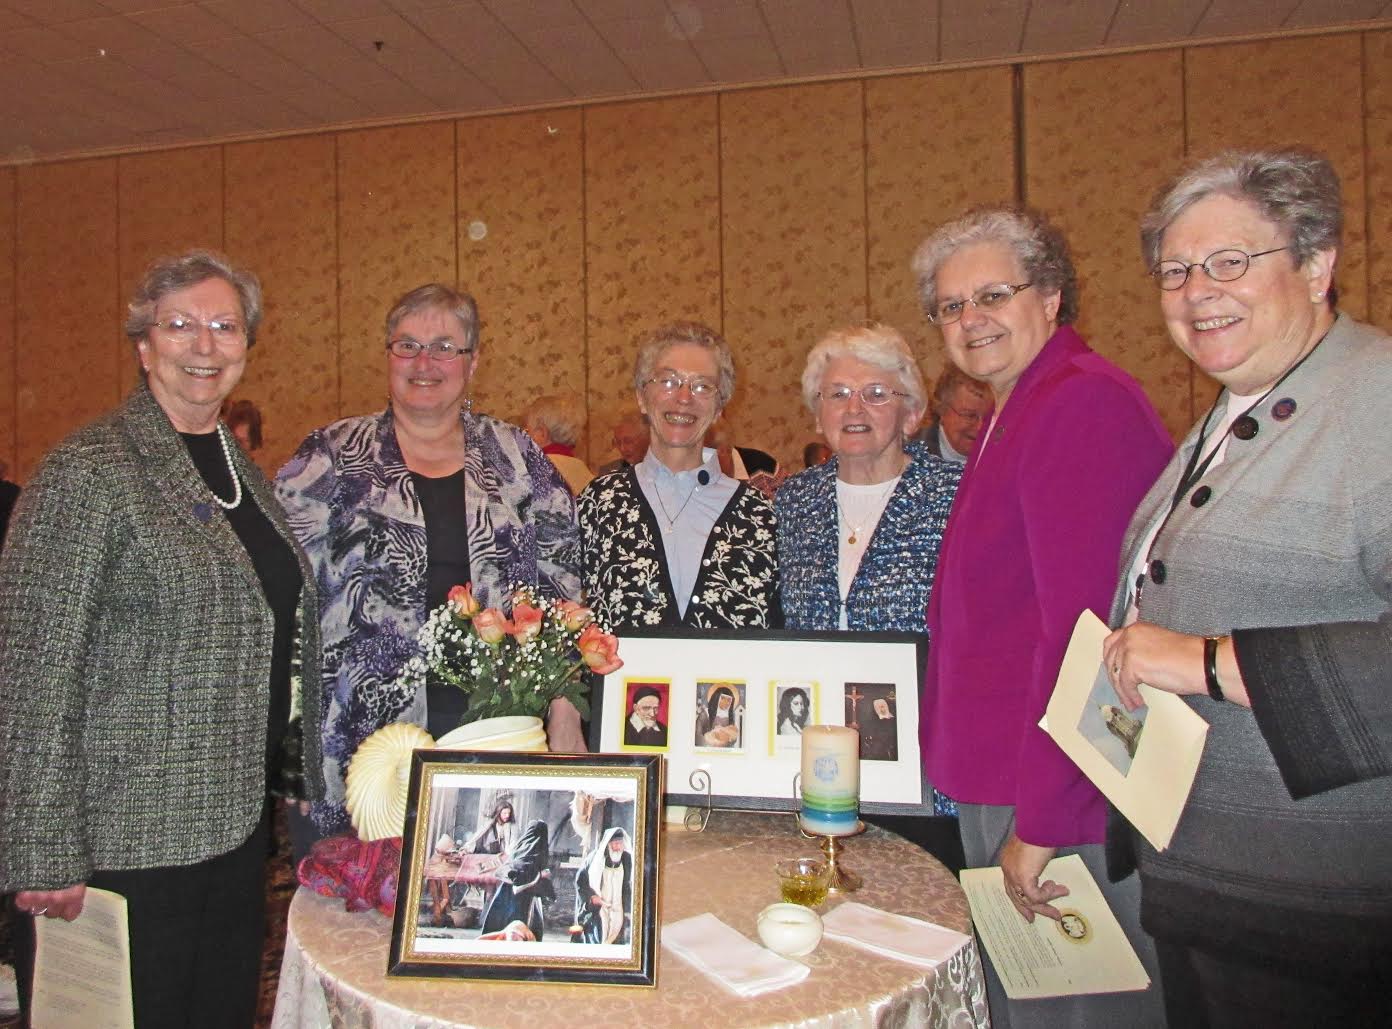 Sisters of Charity of St. Elizabeth – New leadership team